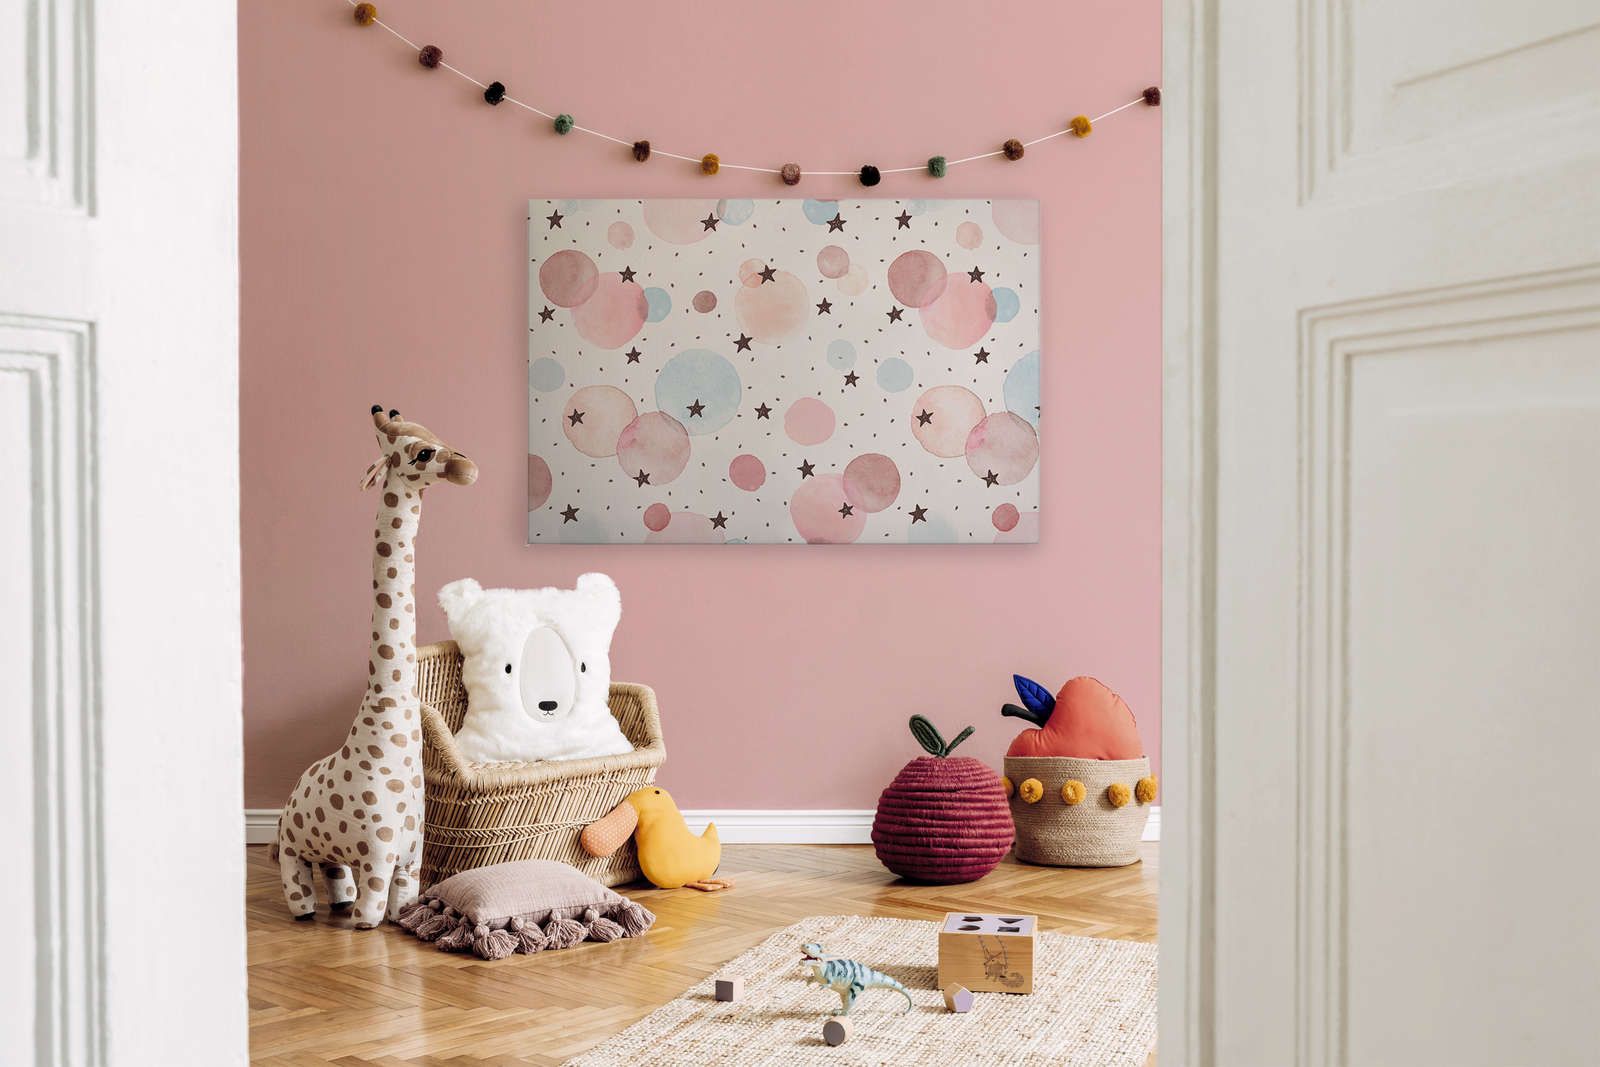             Leinwand fürs Kinderzimmer mit Sternen, Punkten und Kreisen – 120 cm x 80 cm
        